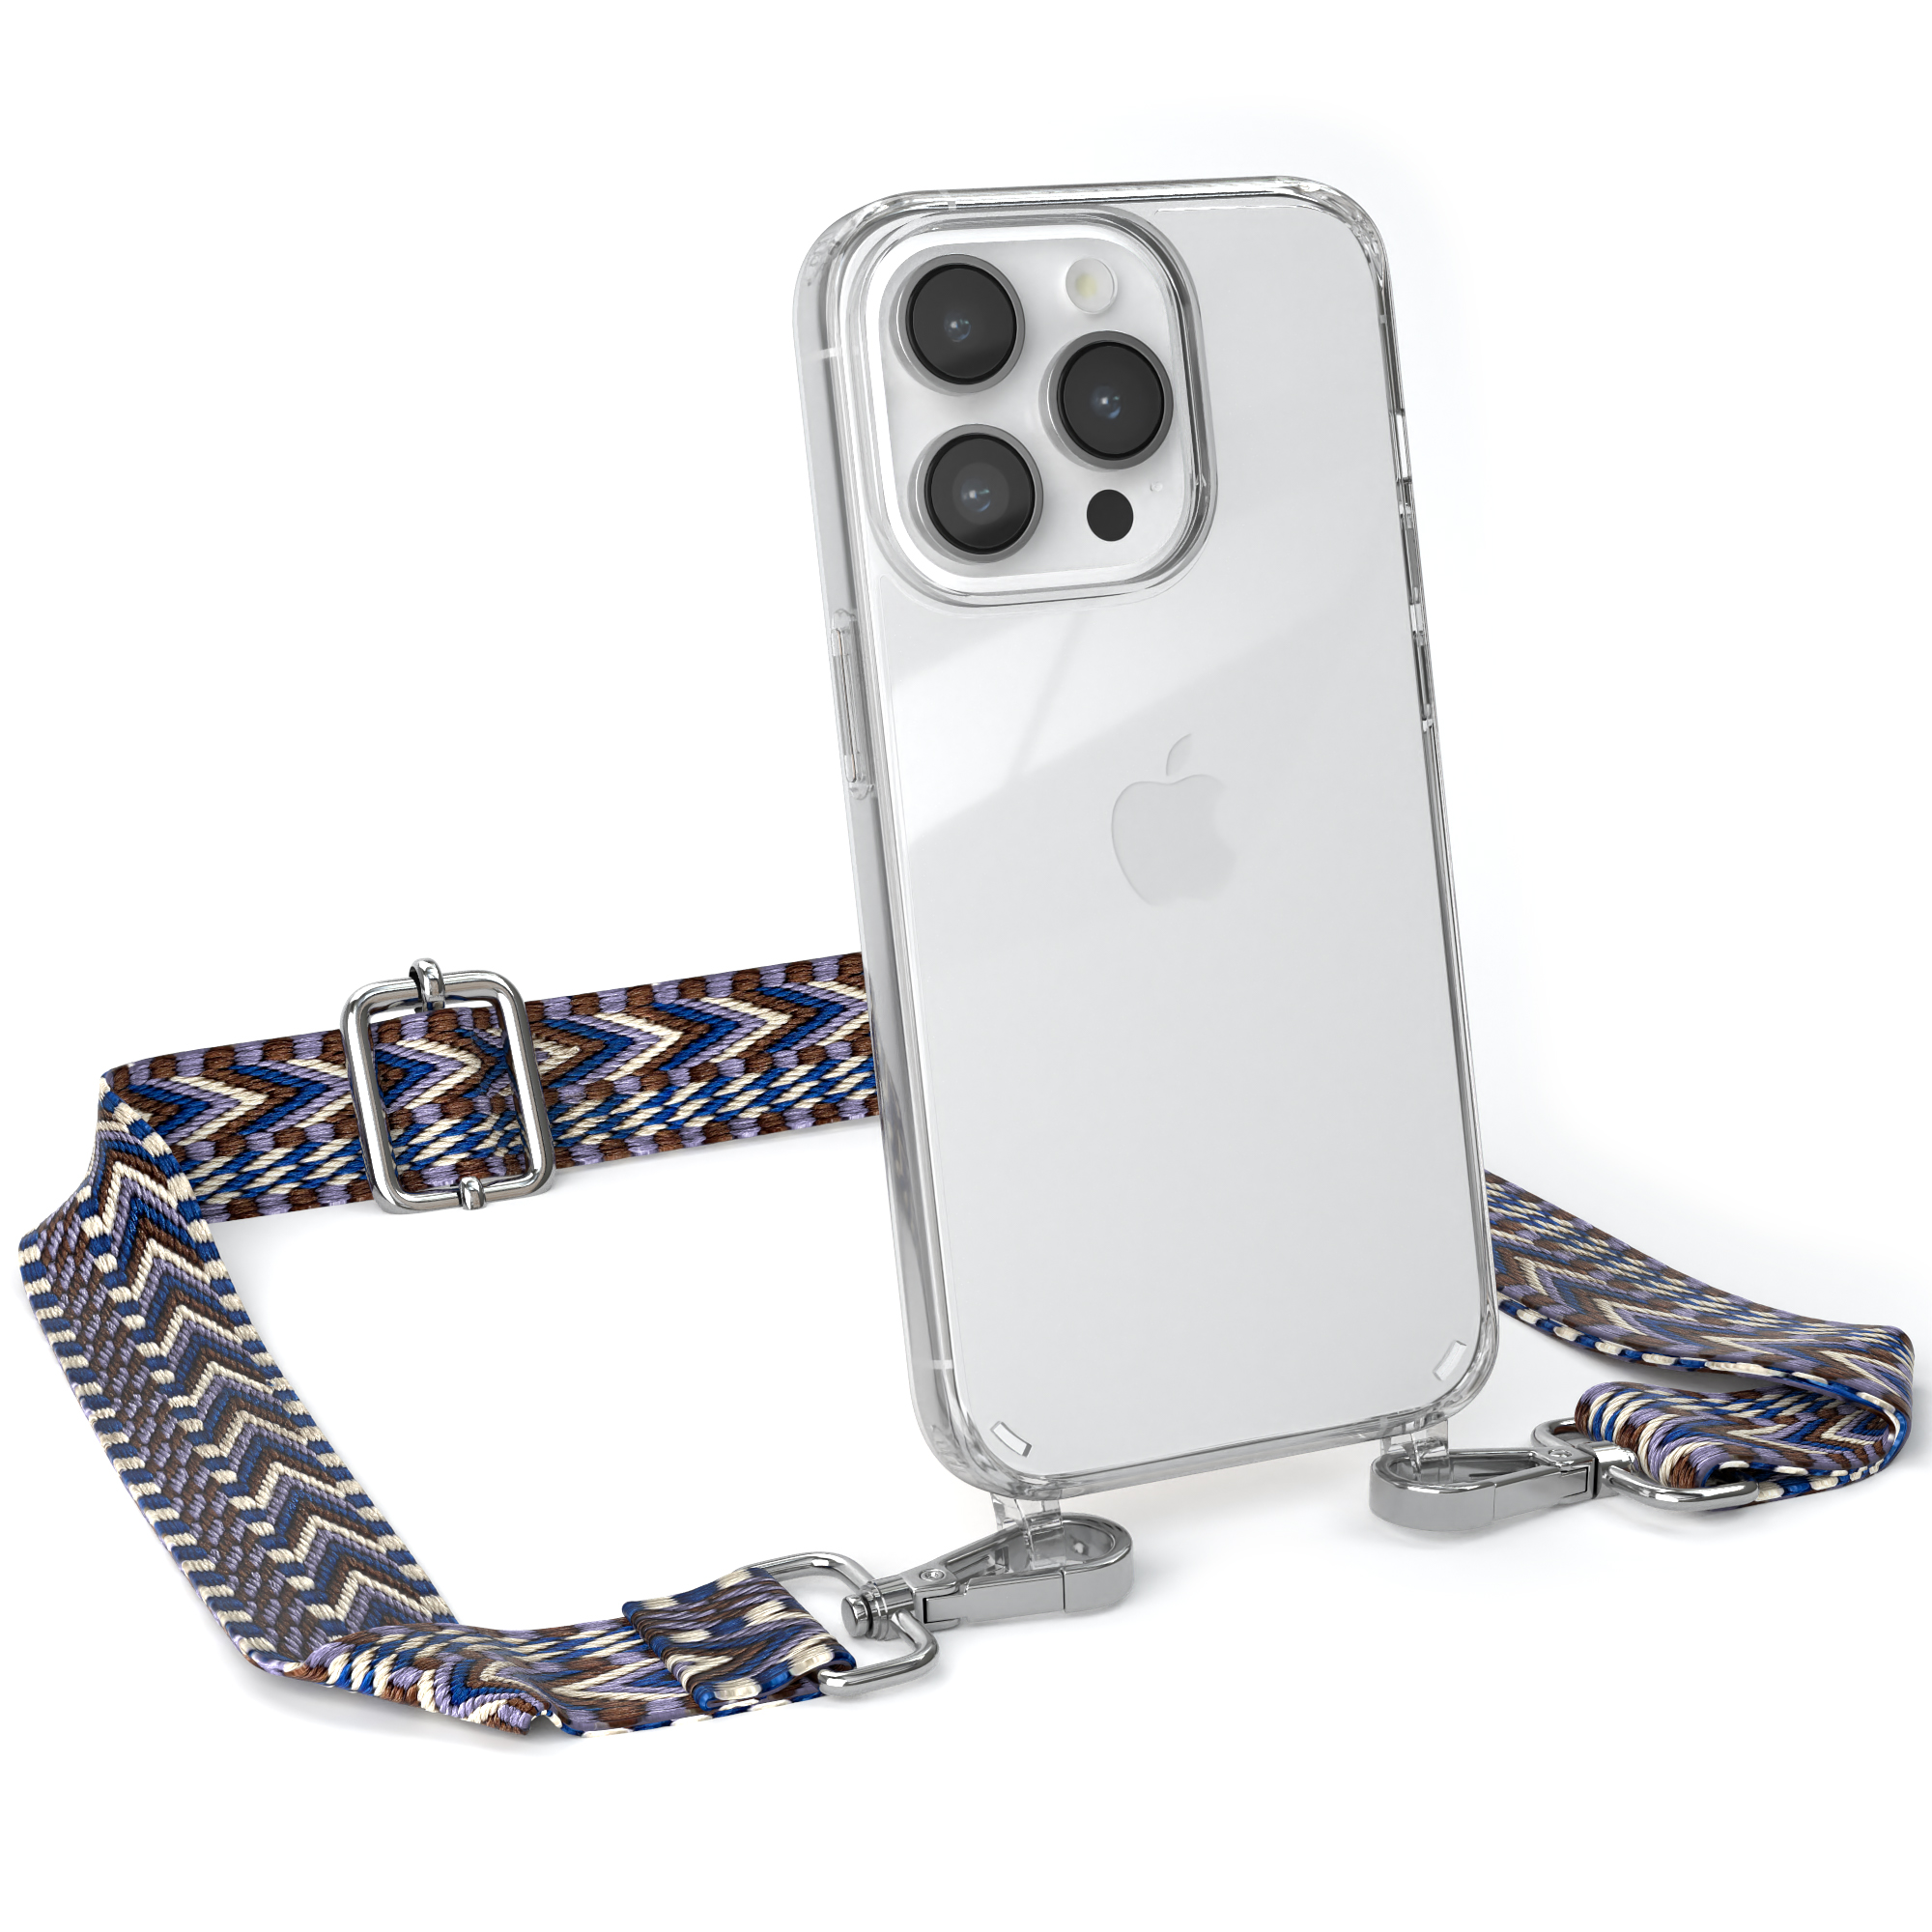 EAZY CASE Transparente Handyhülle mit Pro, Weiß / 14 Umhängetasche, iPhone Apple, Blau Style, Kordel Boho